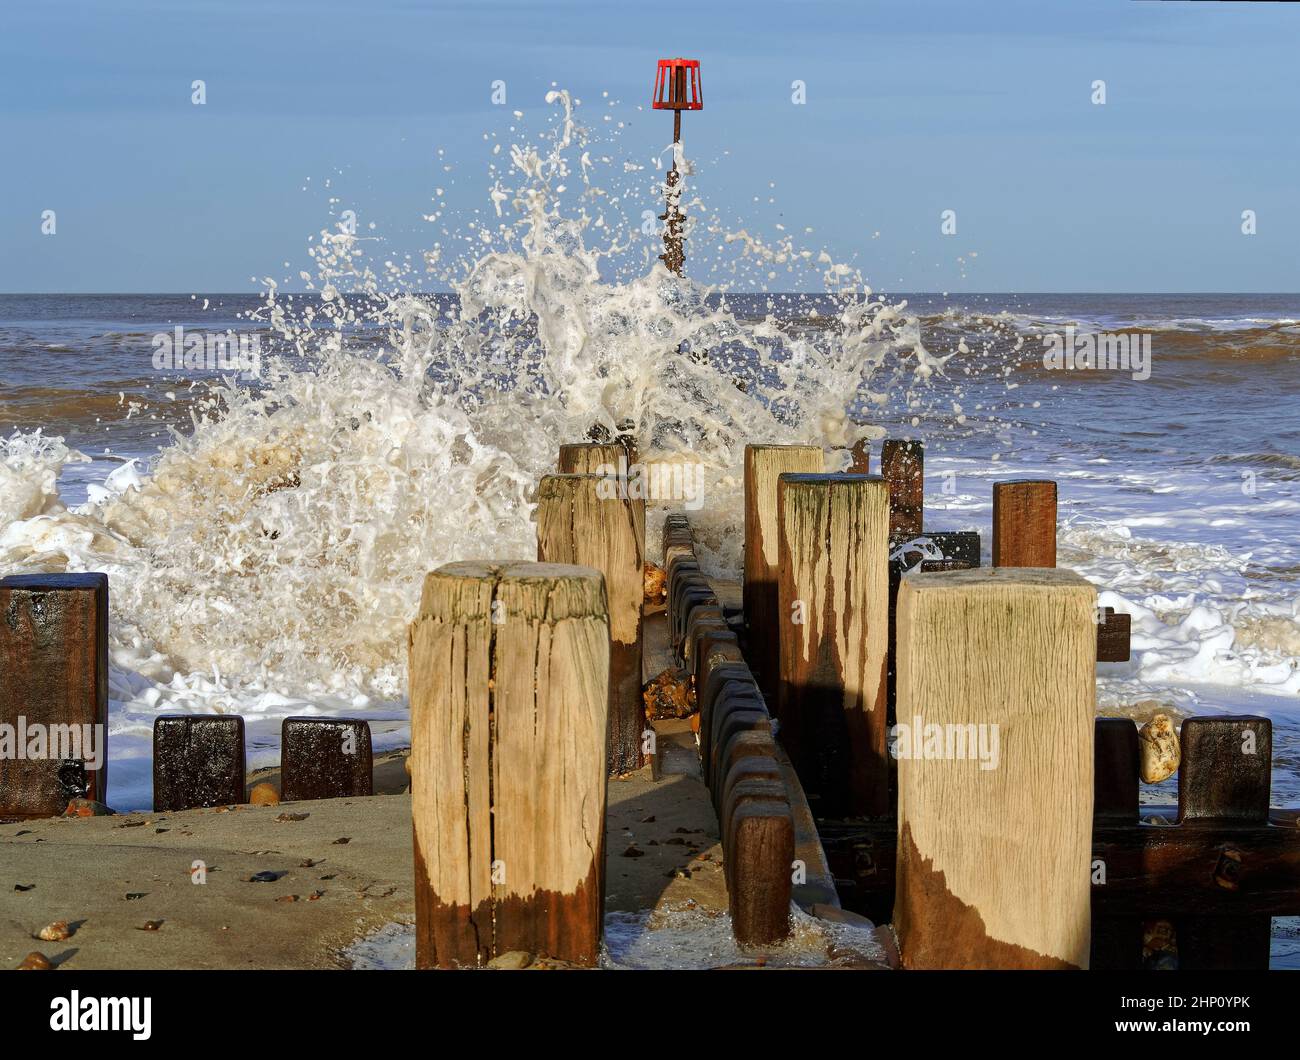 Olas rompiendo sobre defensas marinas de madera en Walcott, Norfolk, durante mares ásperos después de una tormenta que causa rocío y espuma de mar. Foto de stock